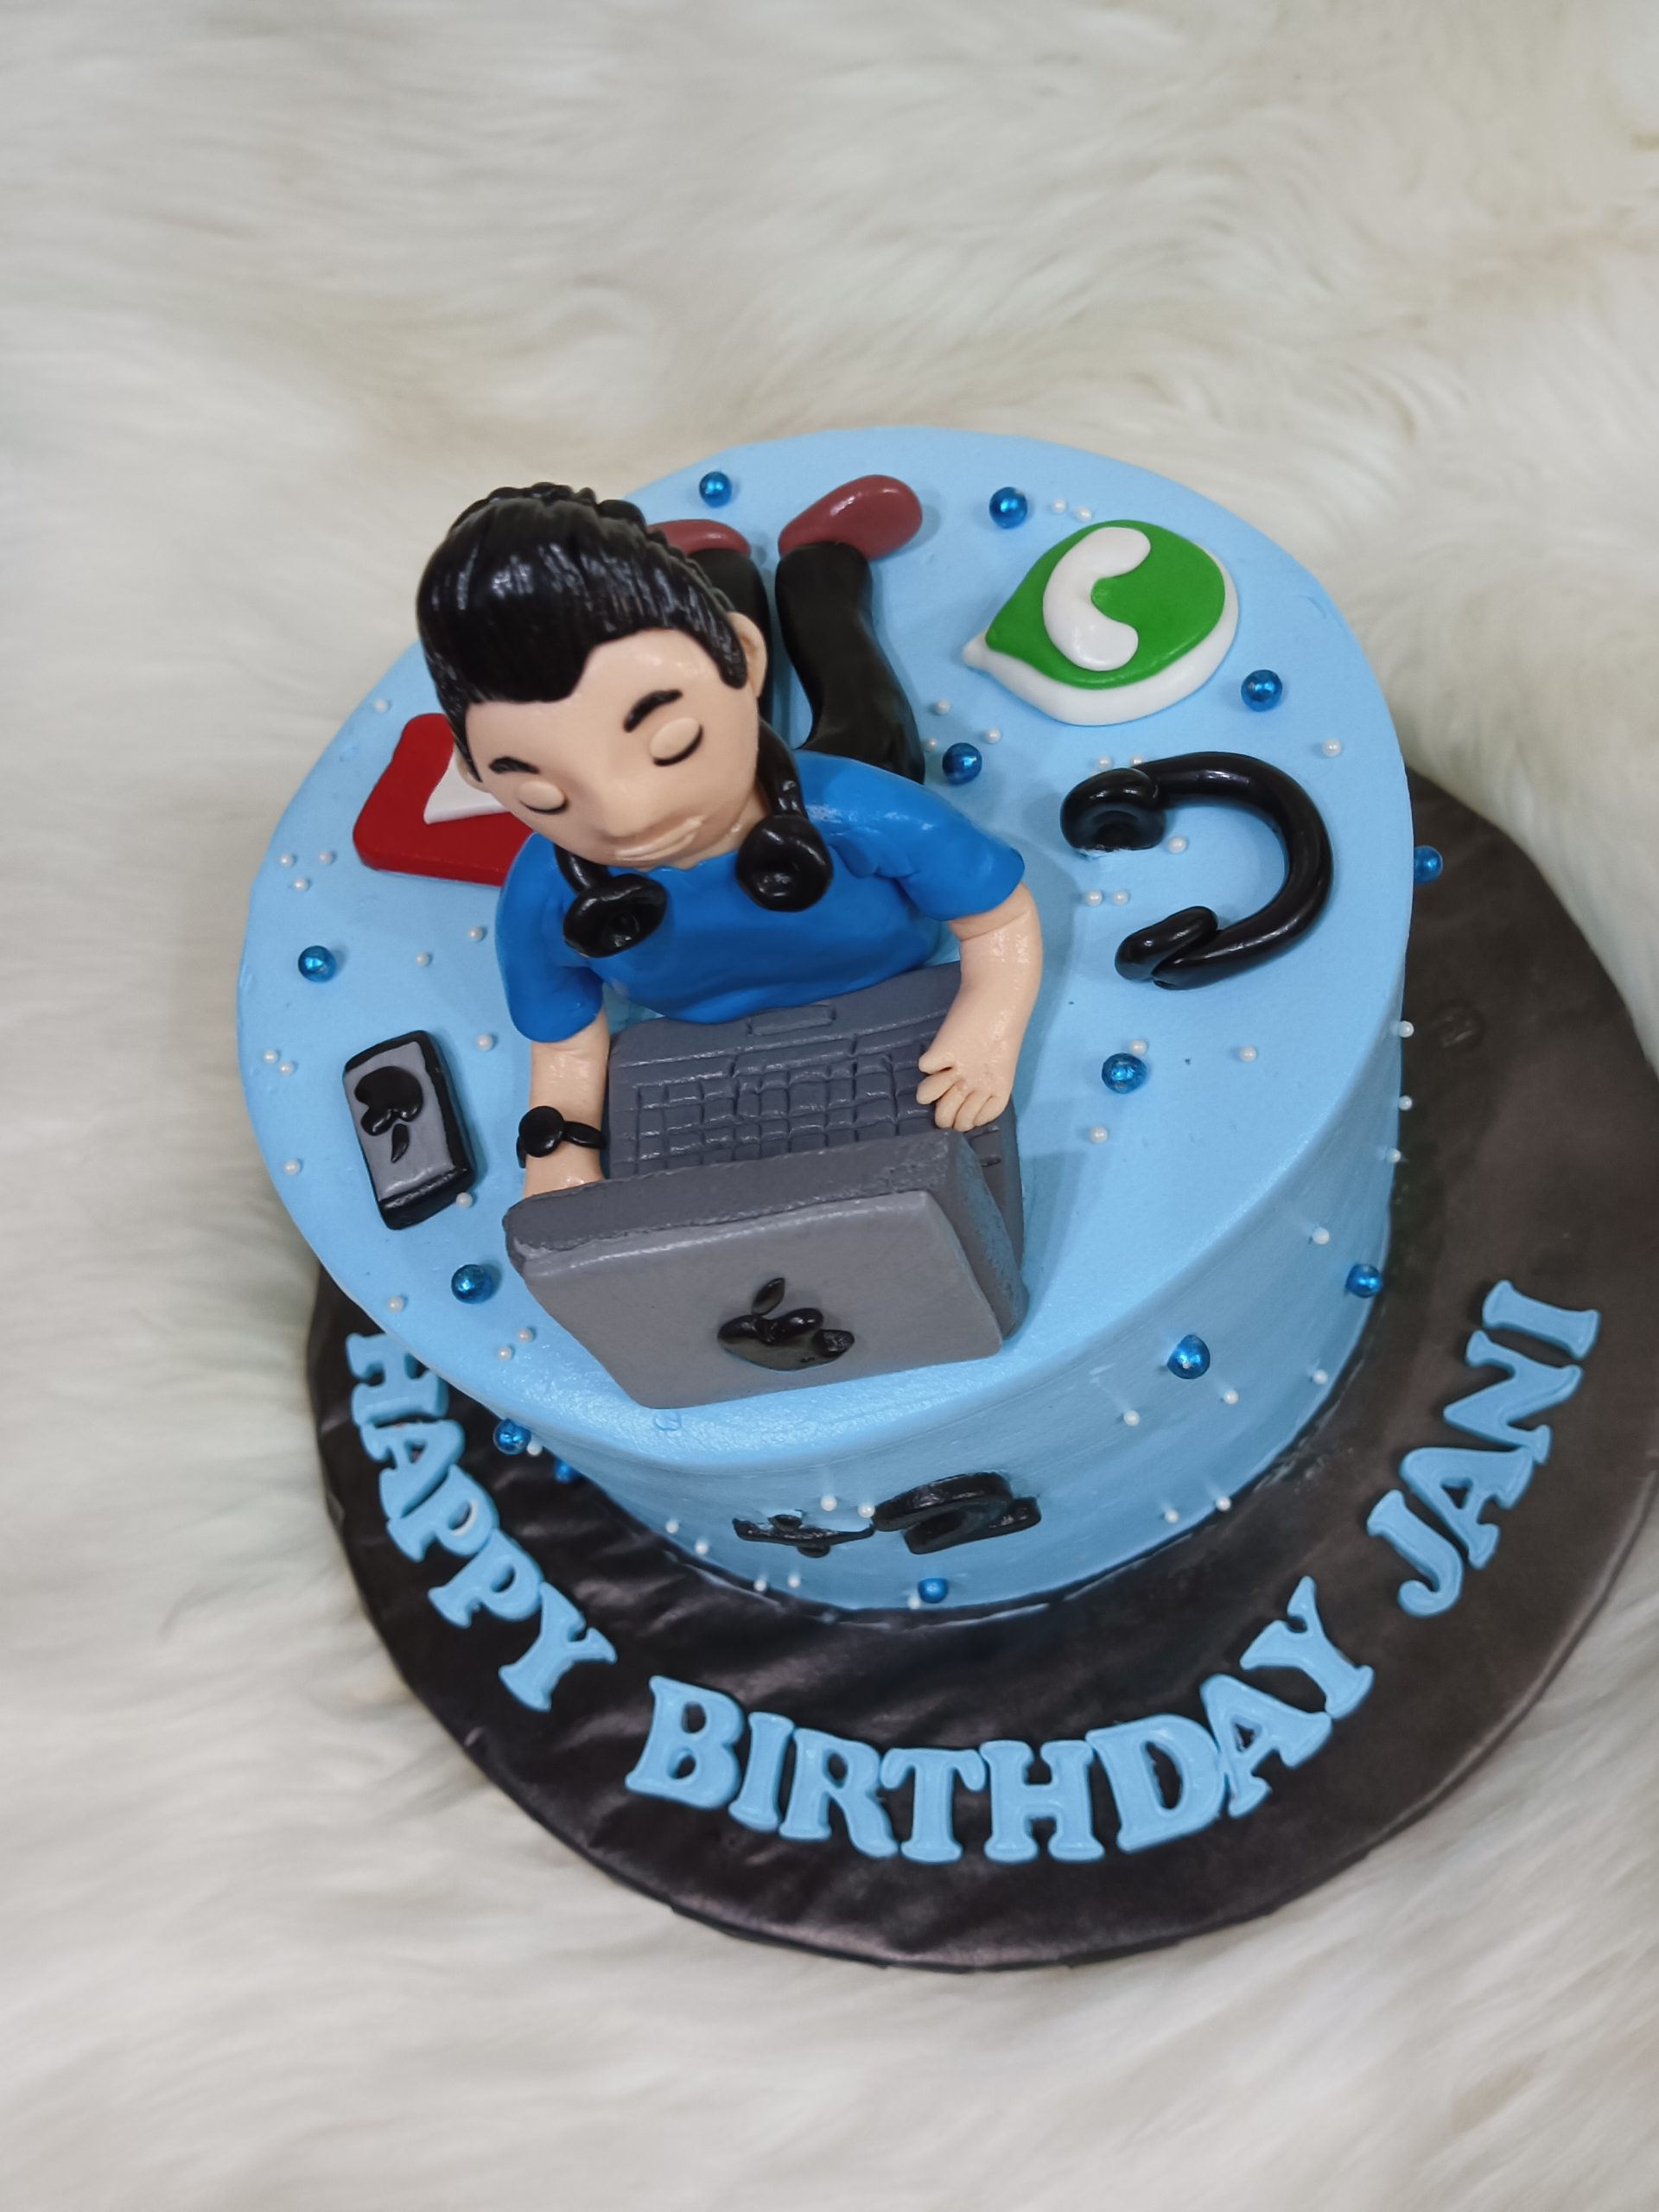 Software Engineer Cake | bakehoney.com